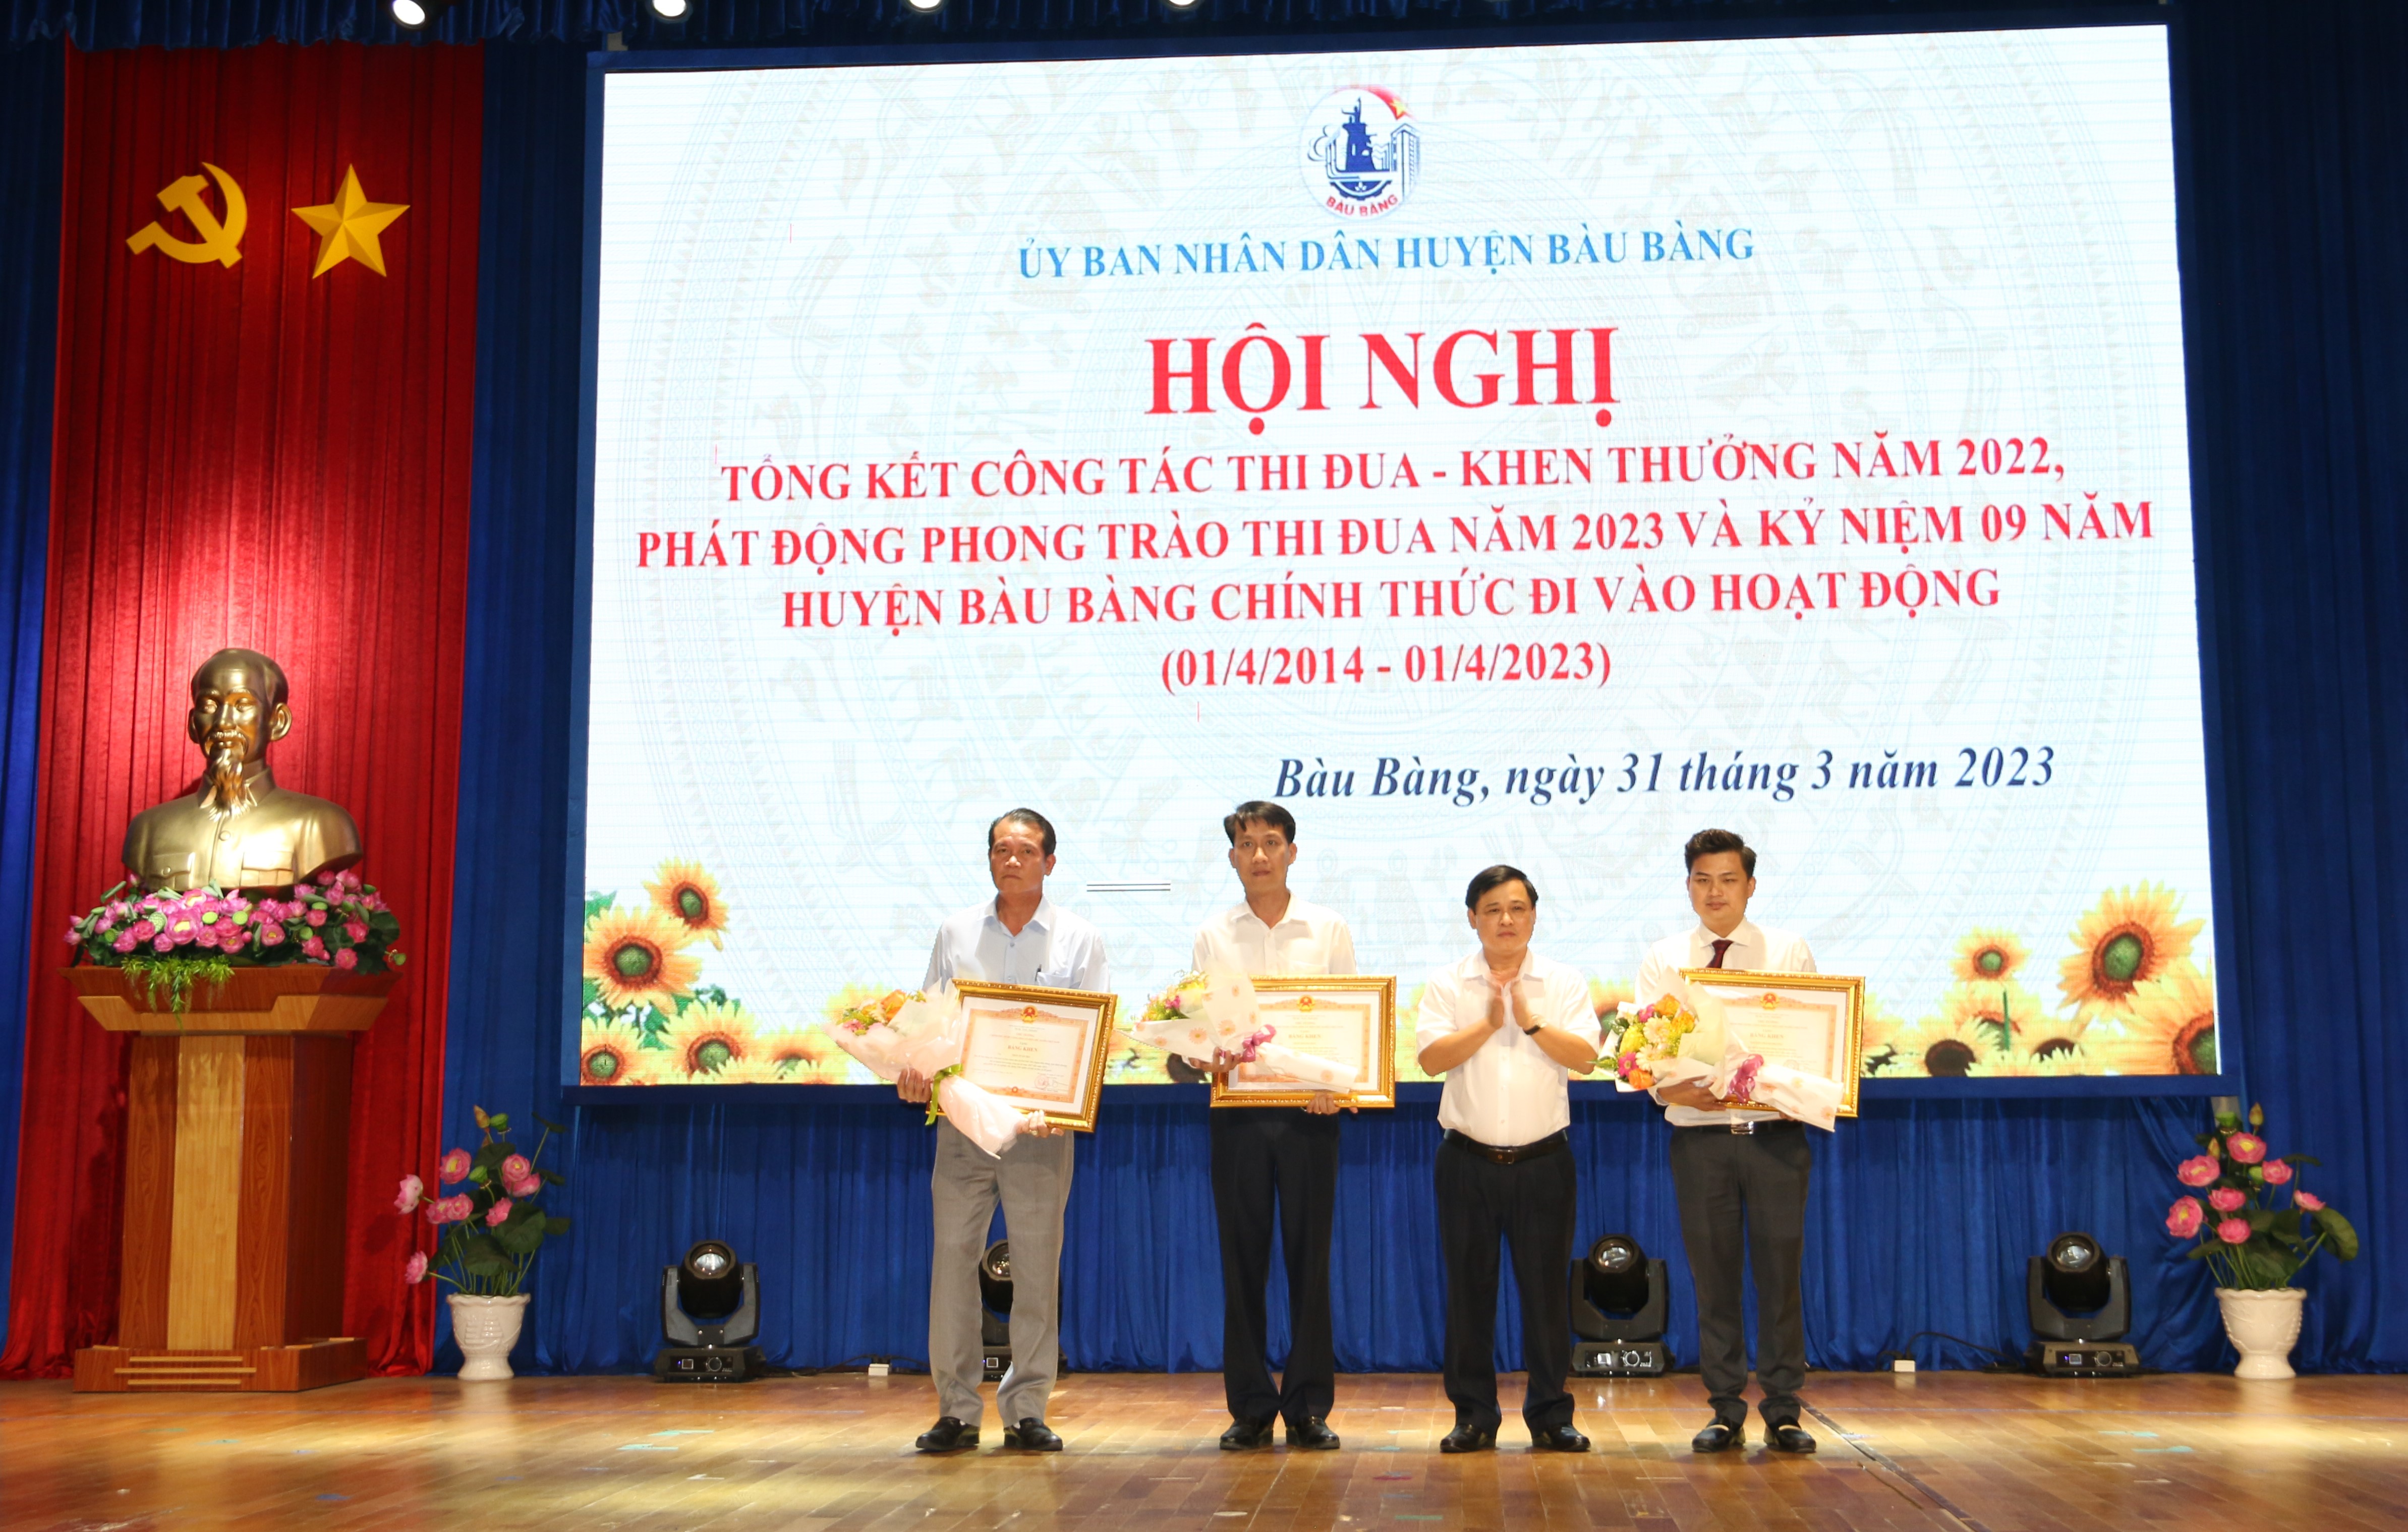 Hội nghị tổng kết công tác thi đua - khen thưởng năm 2022, phát động phong trào thi đua năm 2023 và kỷ niệm 09 năm huyện Bàu Bàng chính thức đi vào hoạt động (01/4/2014 - 01/4/2023)